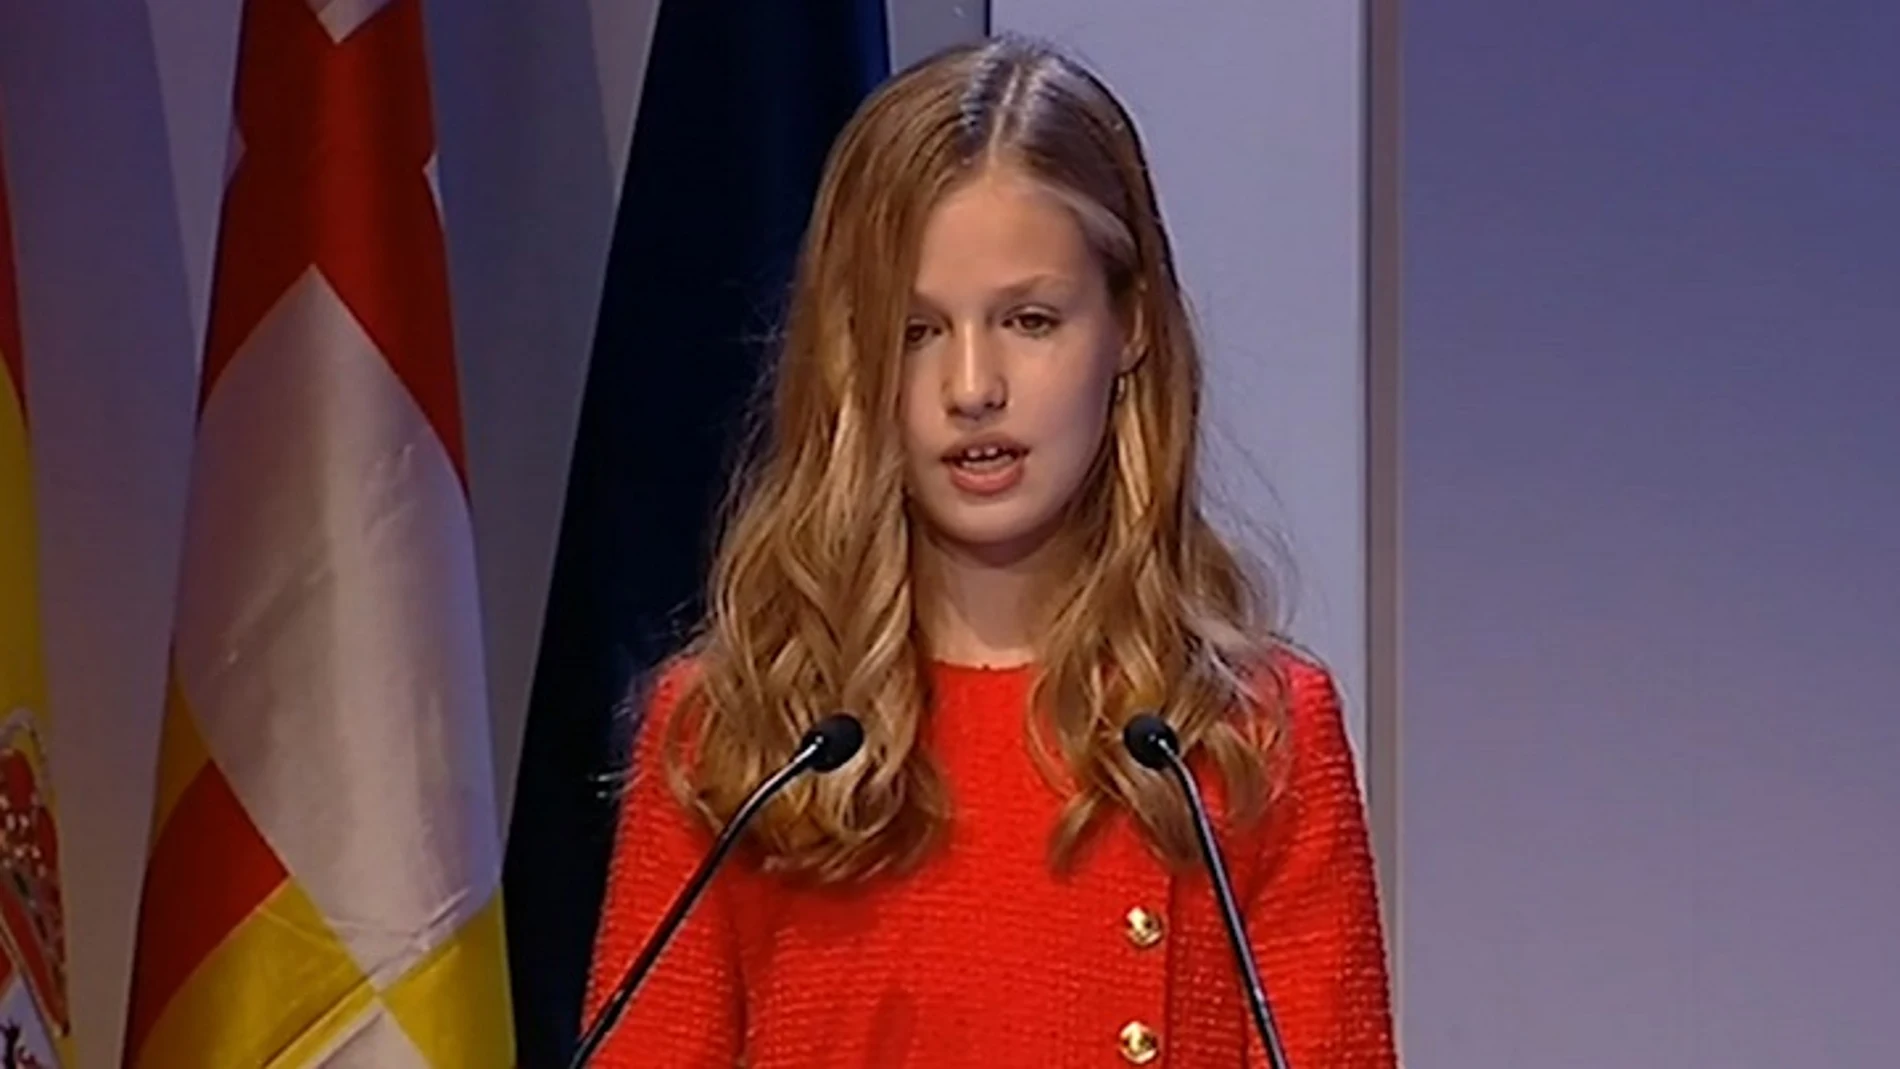 La Princesa Leonor durante su discurso en los Premios Princesa de Girona